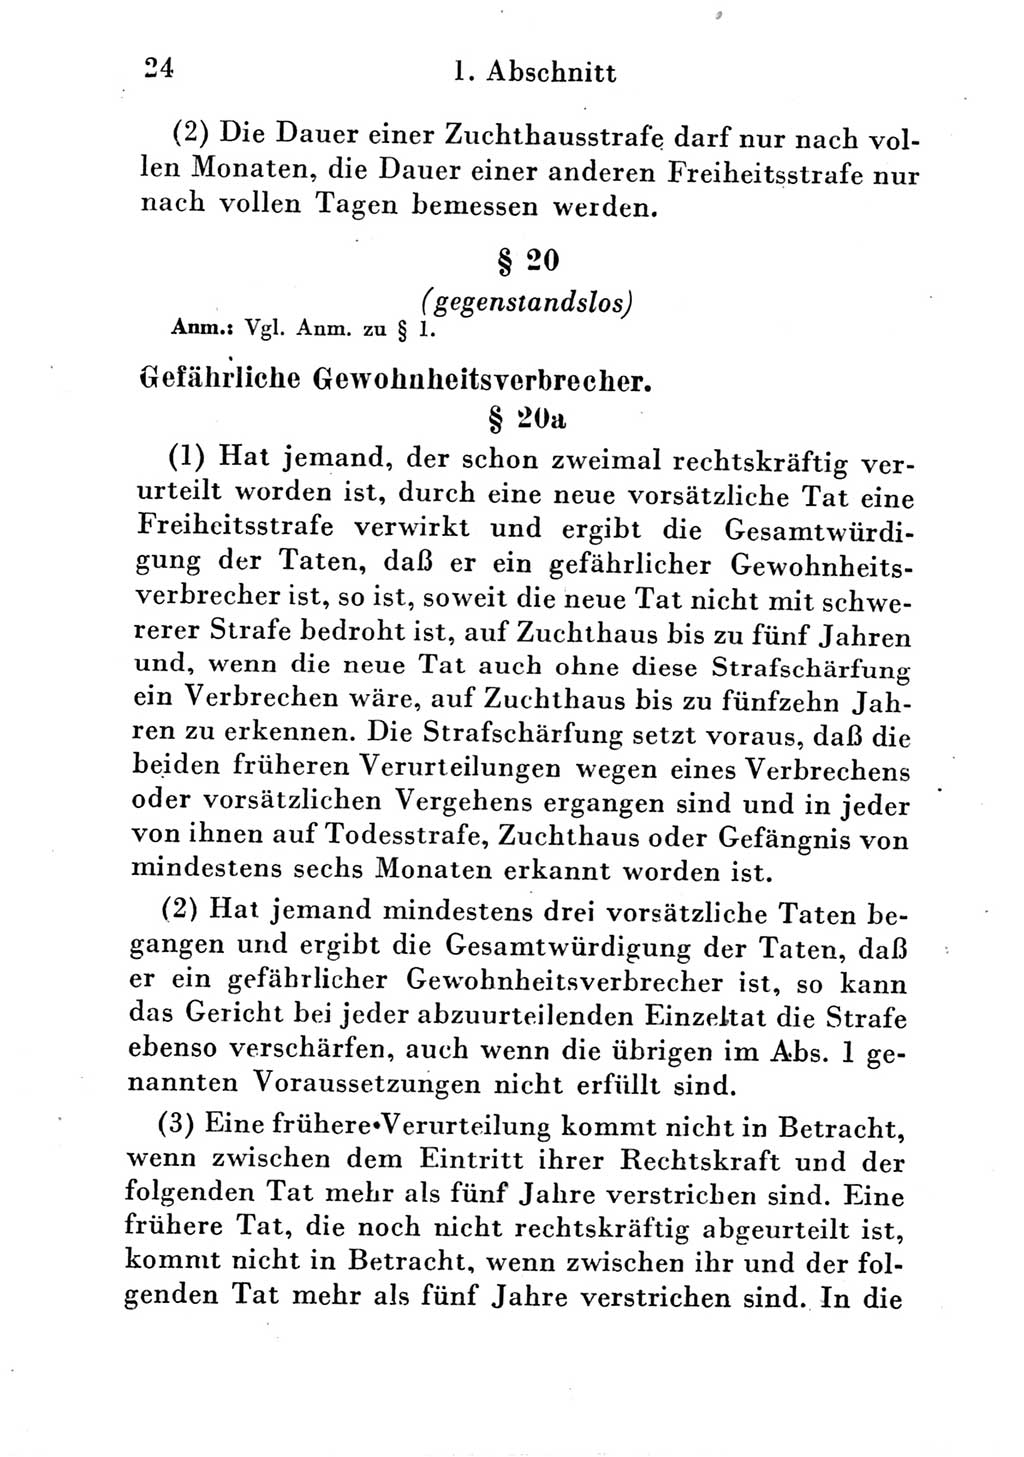 Strafgesetzbuch (StGB) und andere Strafgesetze [Deutsche Demokratische Republik (DDR)] 1951, Seite 24 (StGB Strafges. DDR 1951, S. 24)